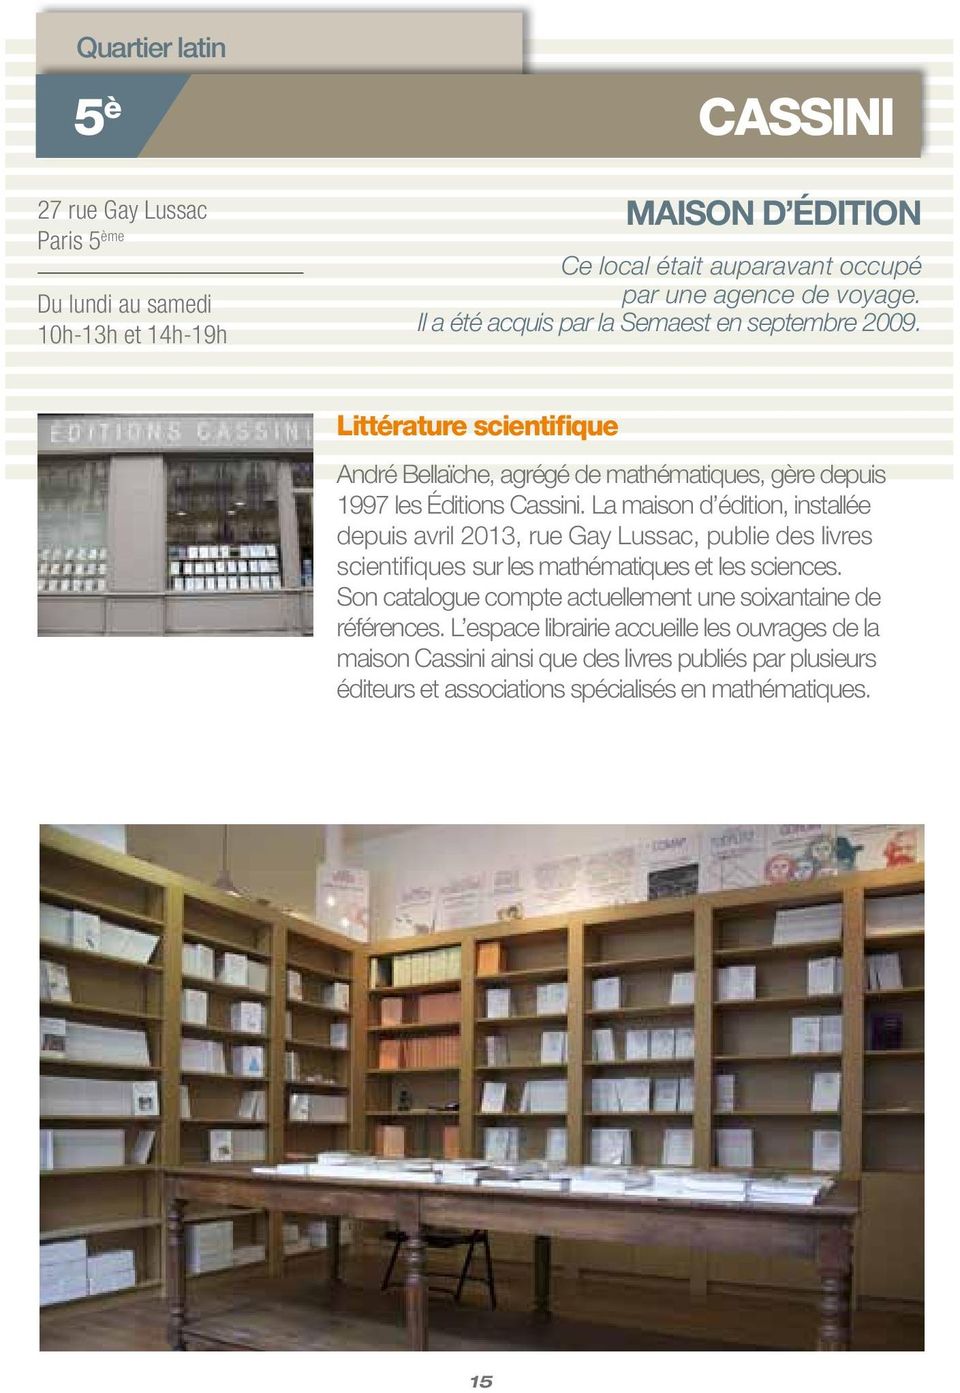 La maison d édition, installée depuis avril 2013, rue Gay Lussac, publie des livres scientifiques sur les mathématiques et les sciences.